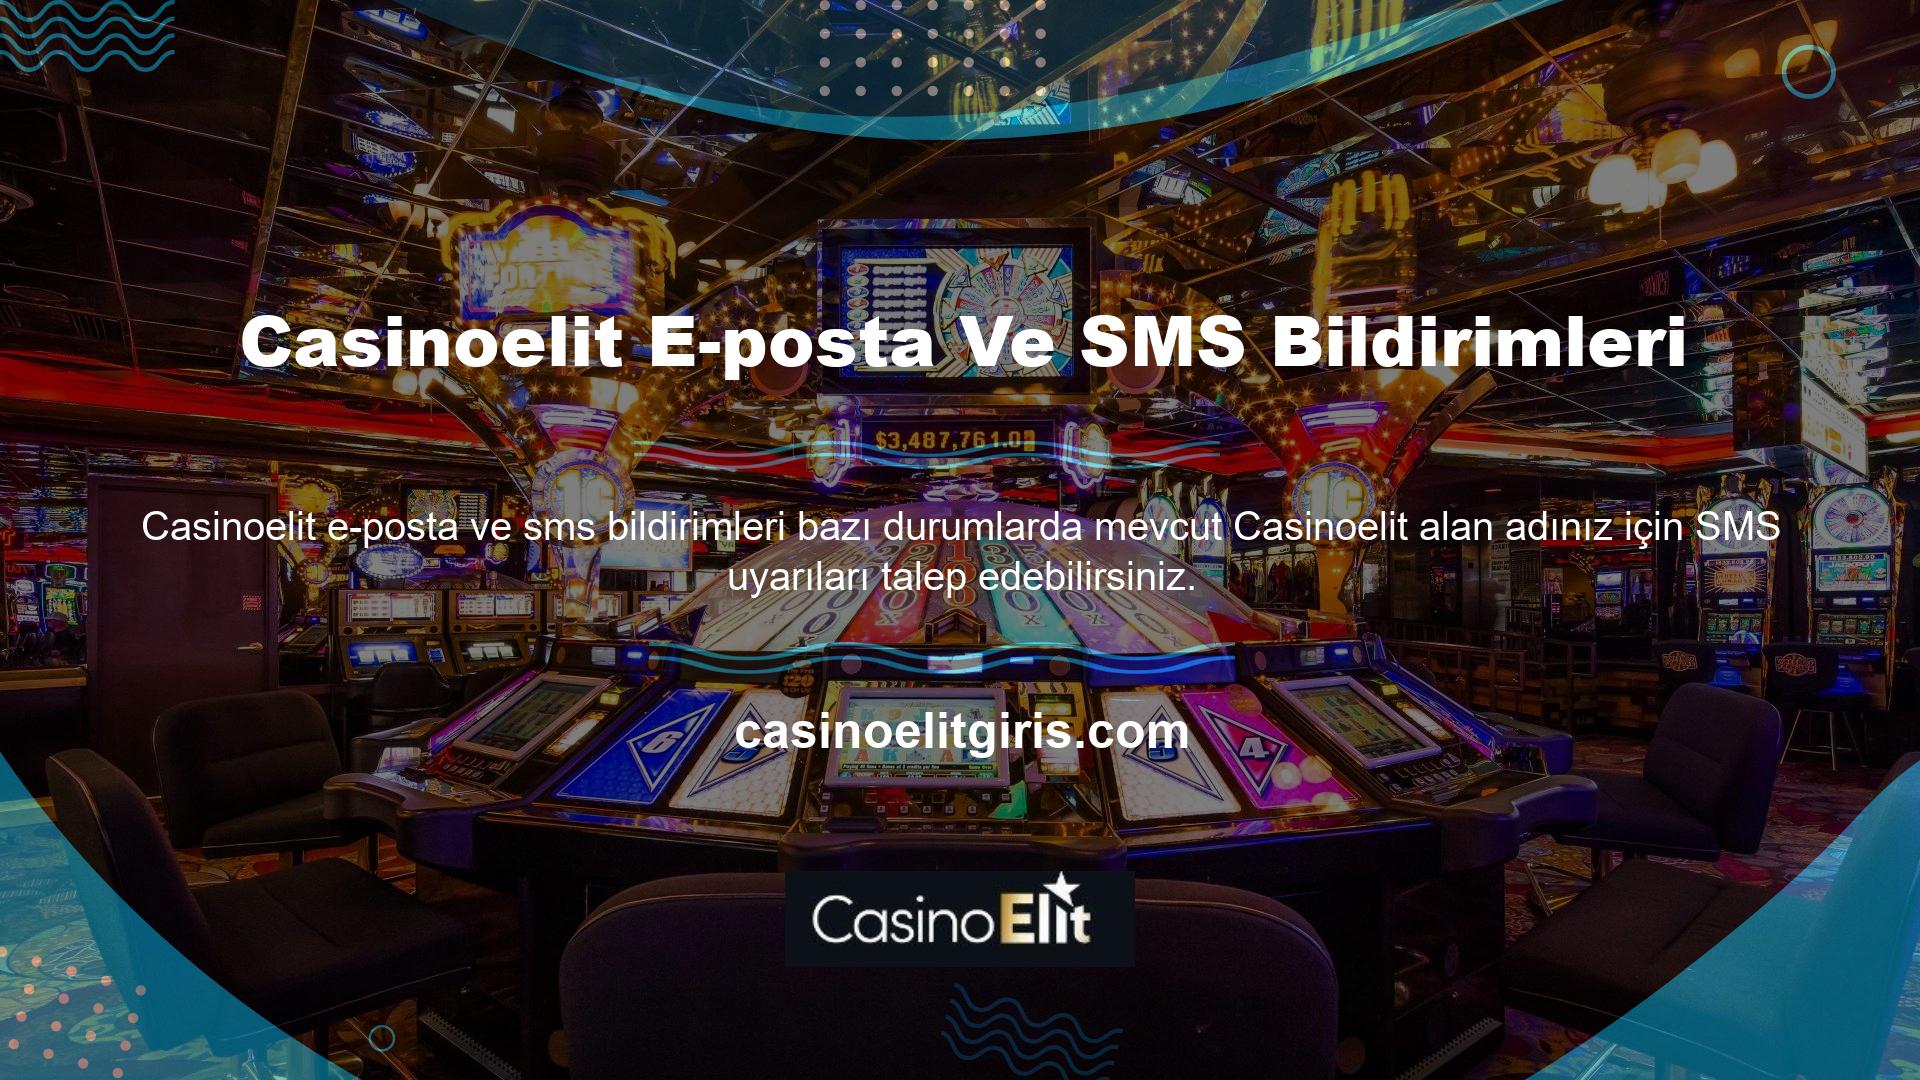 Türk Casino ve Casino Daha önce de belirttiğimiz gibi Casinoelit Türk Bahis ve Casino'ya kaydolmanın ilk adımı mevcut web sitenizin adresini girmektir